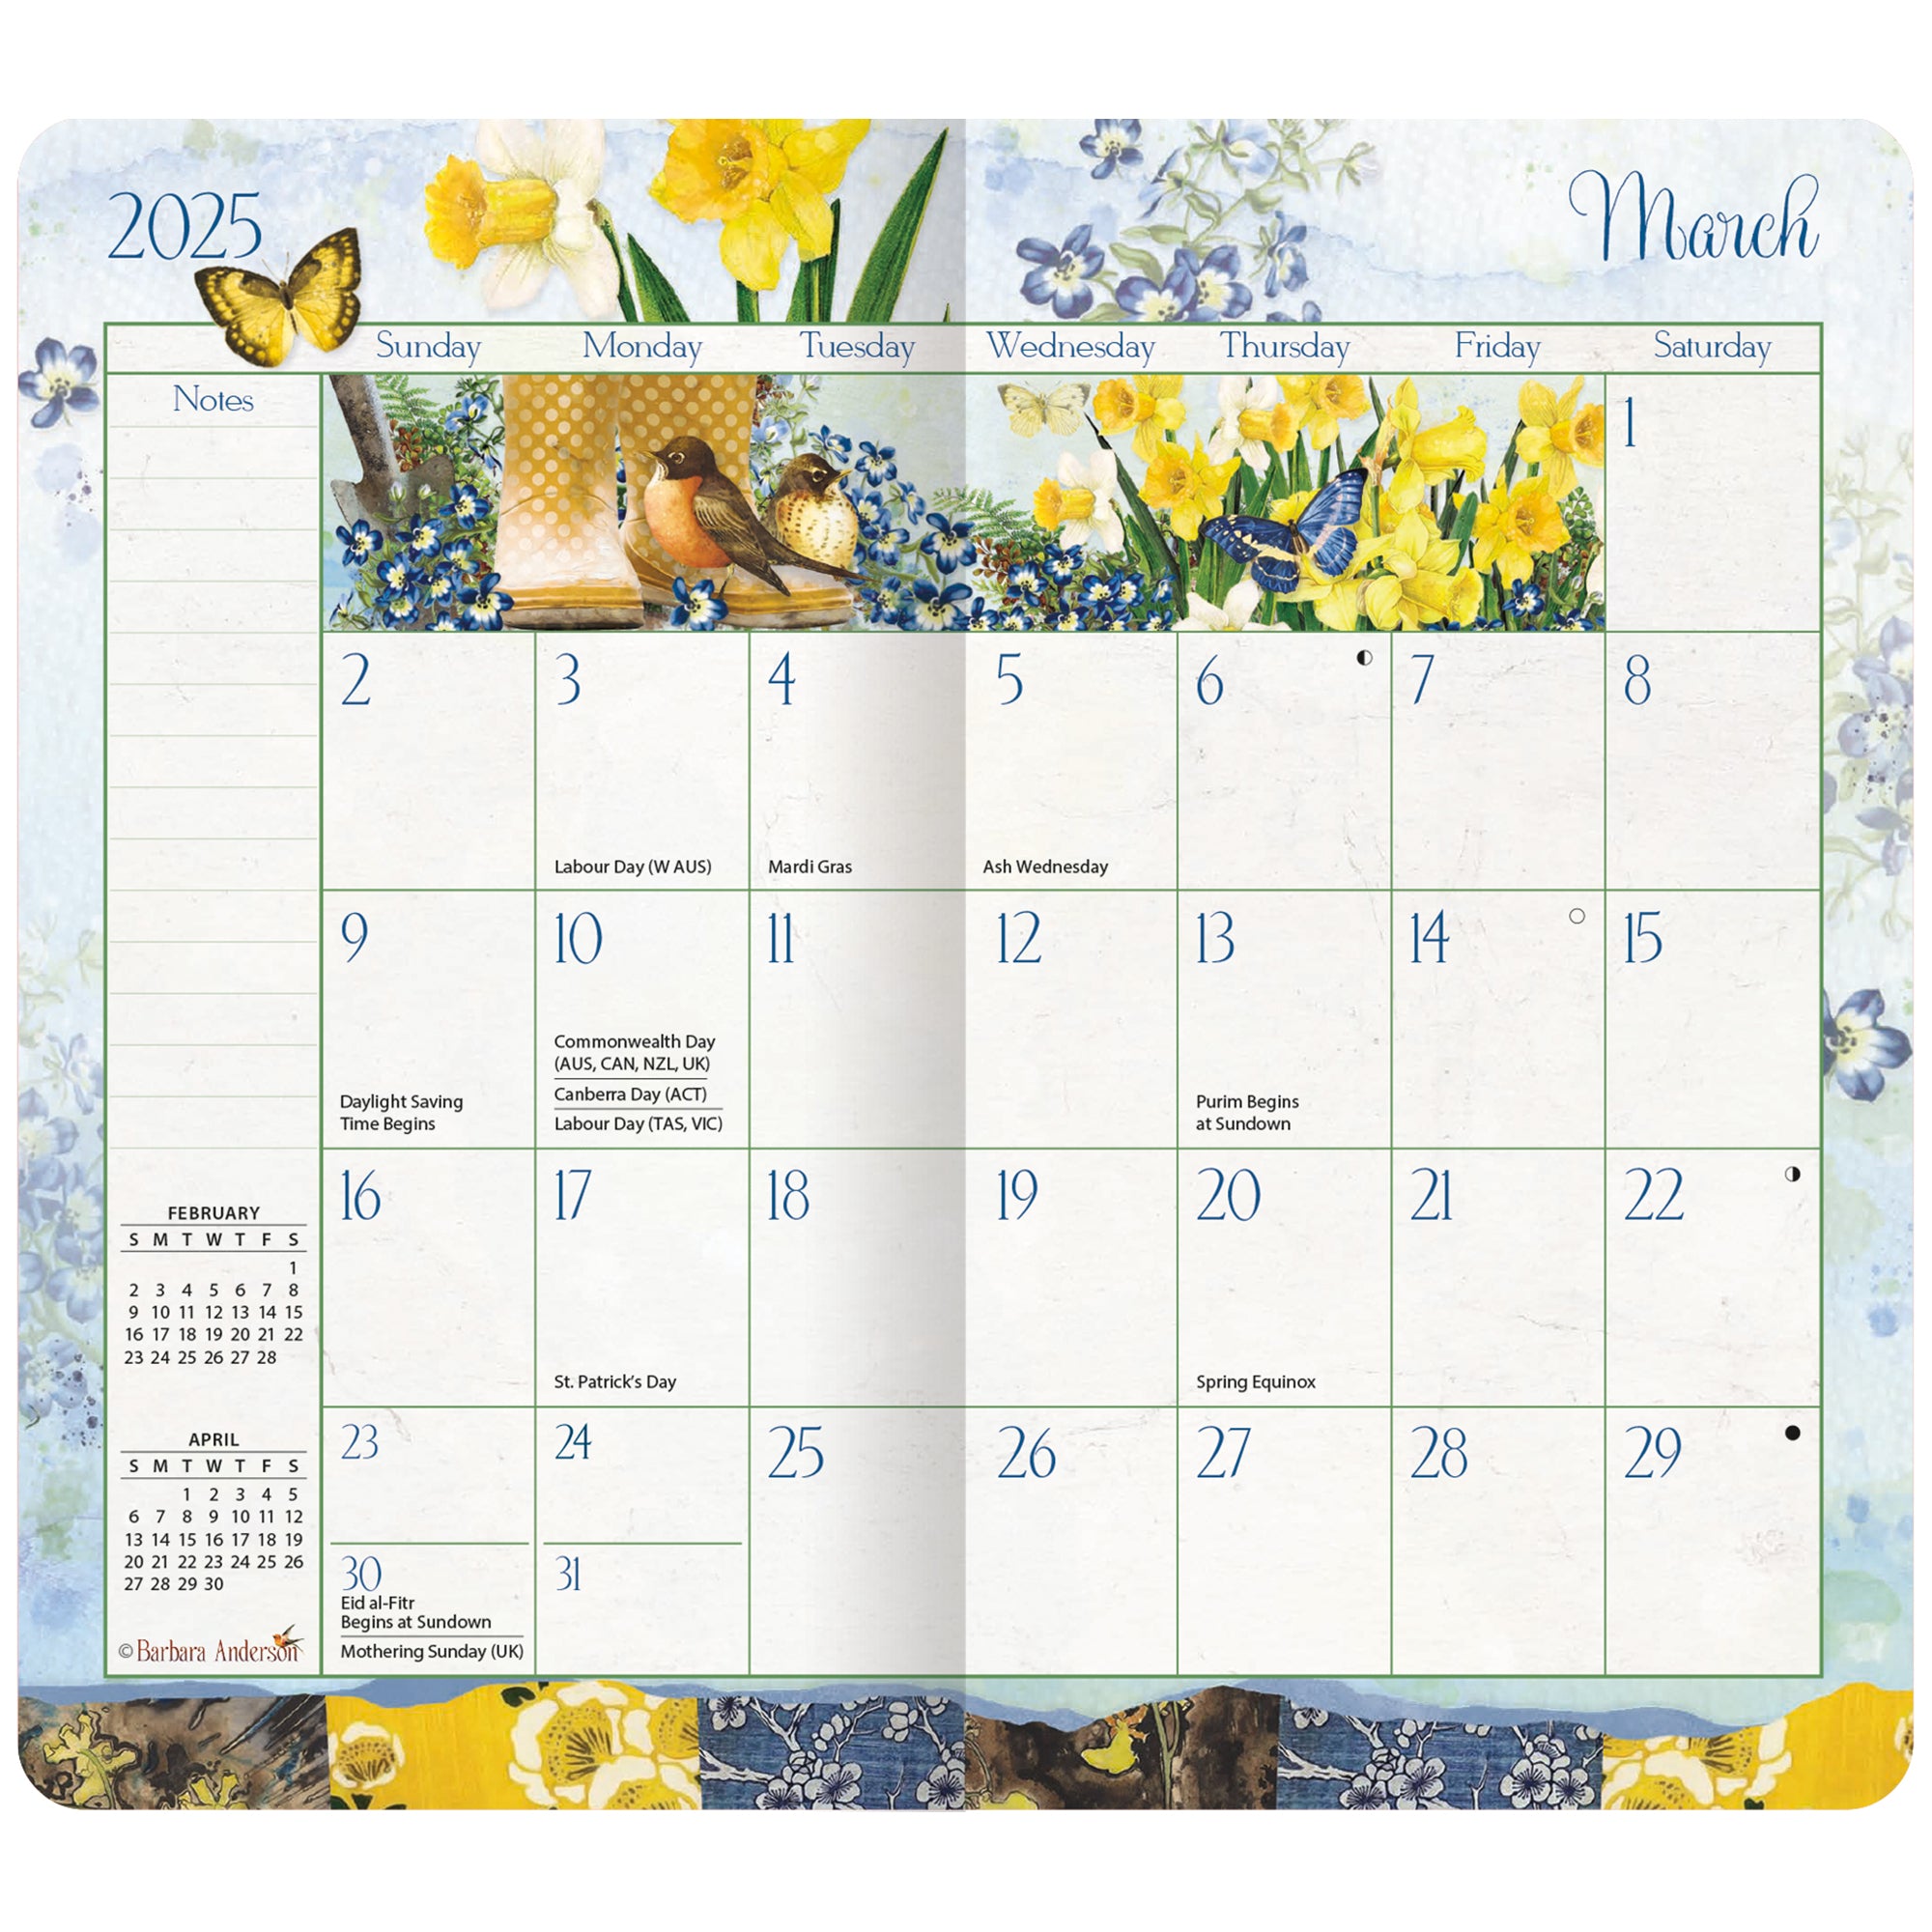 2025-2026 Garden Botanicals - LANG 2 Year Pocket Diary/Planner